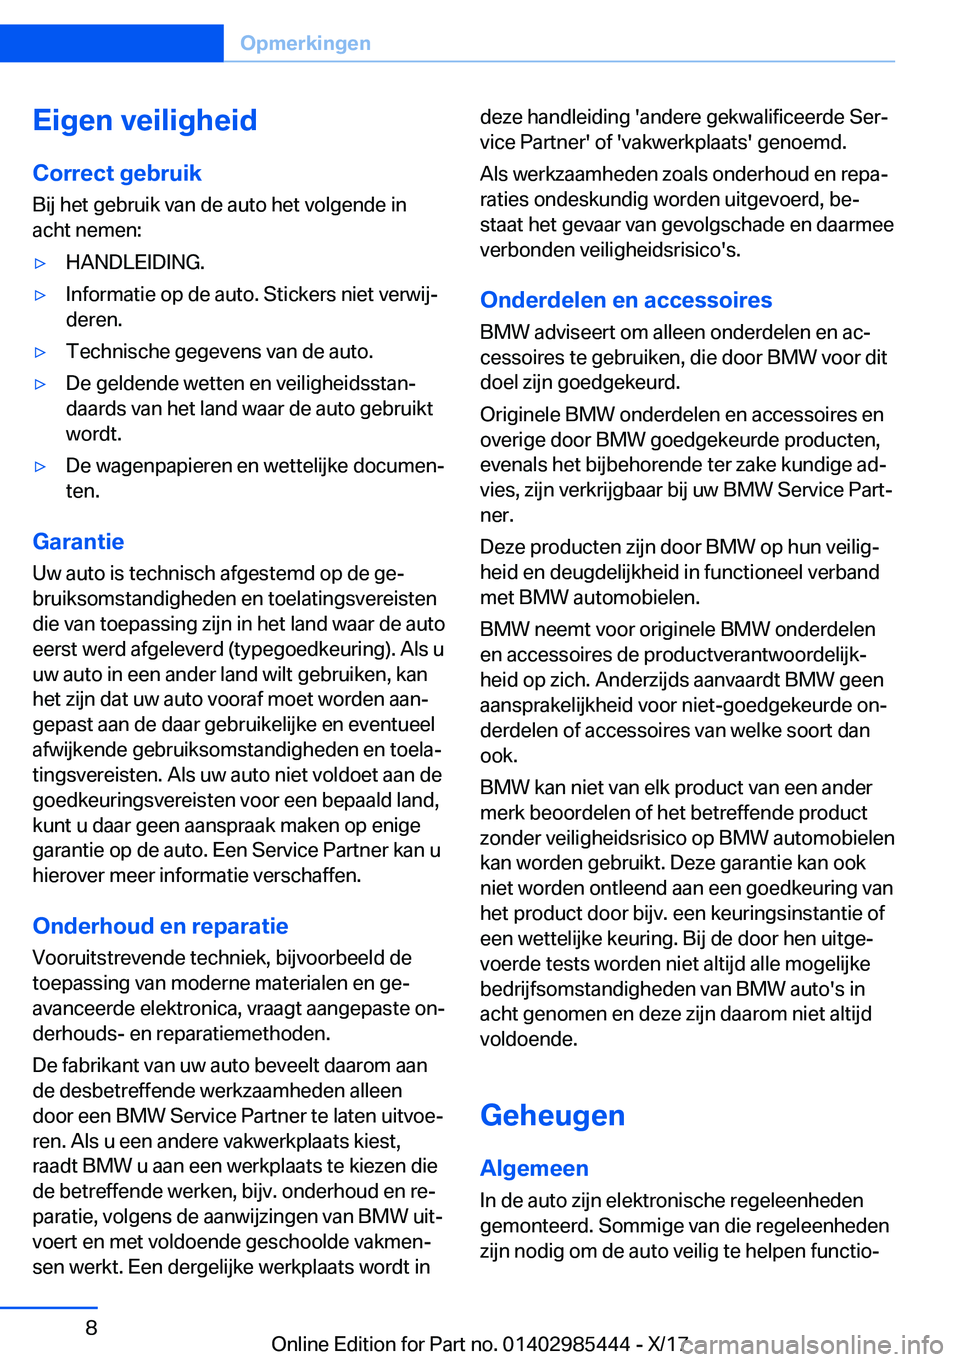 BMW X1 2018  Instructieboekjes (in Dutch) �E�i�g�e�n��v�e�i�l�i�g�h�e�i�d
�C�o�r�r�e�c�t��g�e�b�r�u�i�k �B�i�j� �h�e�t� �g�e�b�r�u�i�k� �v�a�n� �d�e� �a�u�t�o� �h�e�t� �v�o�l�g�e�n�d�e� �i�n
�a�c�h�t� �n�e�m�e�n�:'y�H�A�N�D�L�E�I�D�I�N�